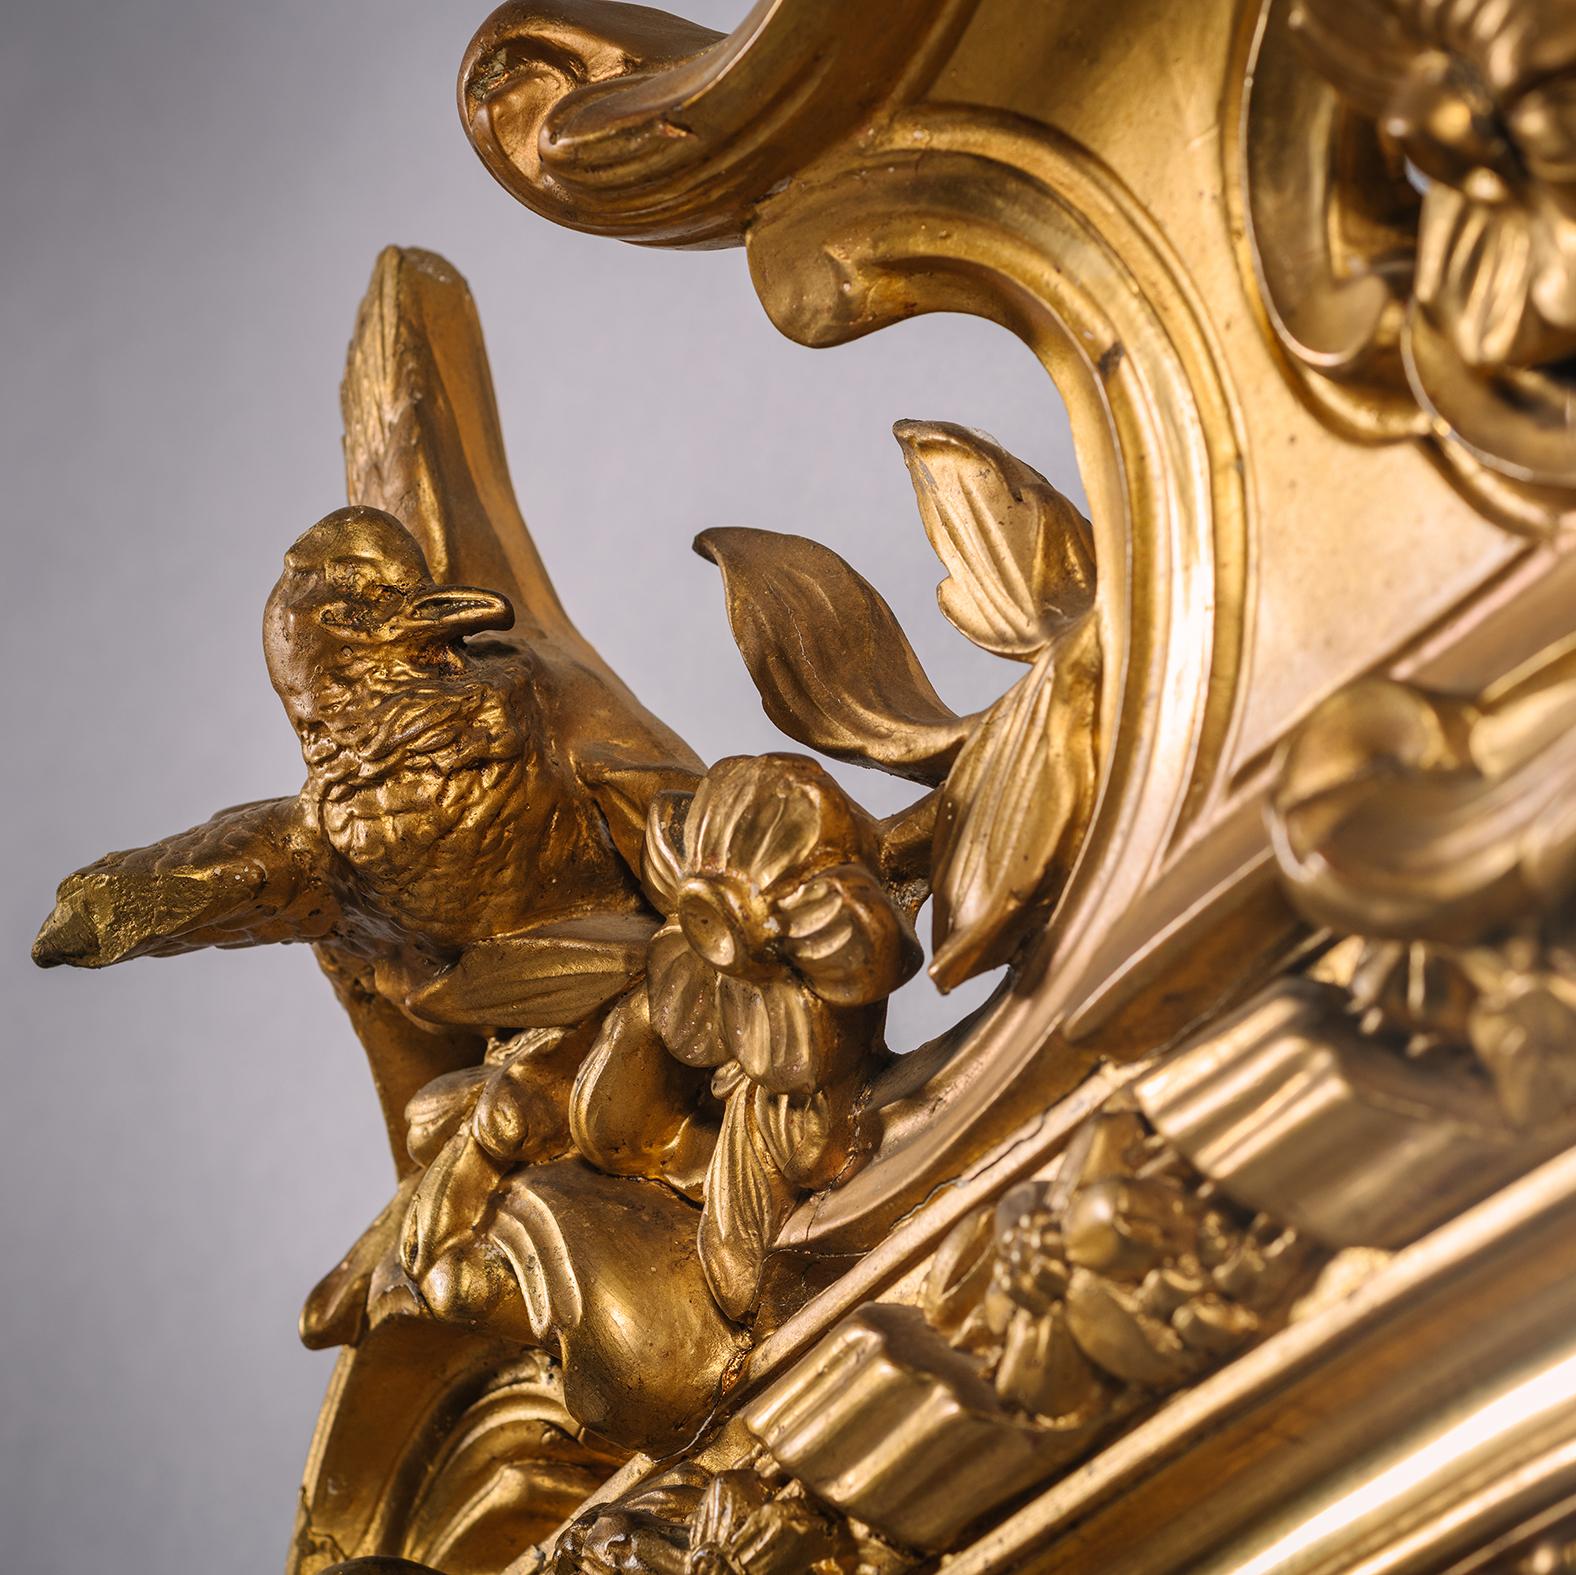 Ein Napoleon III Giltwood und Gilt-Gesso Overmantel Spiegel. Frankreich, ca. 1860

Dieser feine und große Übermantelspiegel ist im Louis XV-Stil gestaltet und reichlich mit Attributen des Frühlings verziert. In der Mitte des gewölbten Giebels